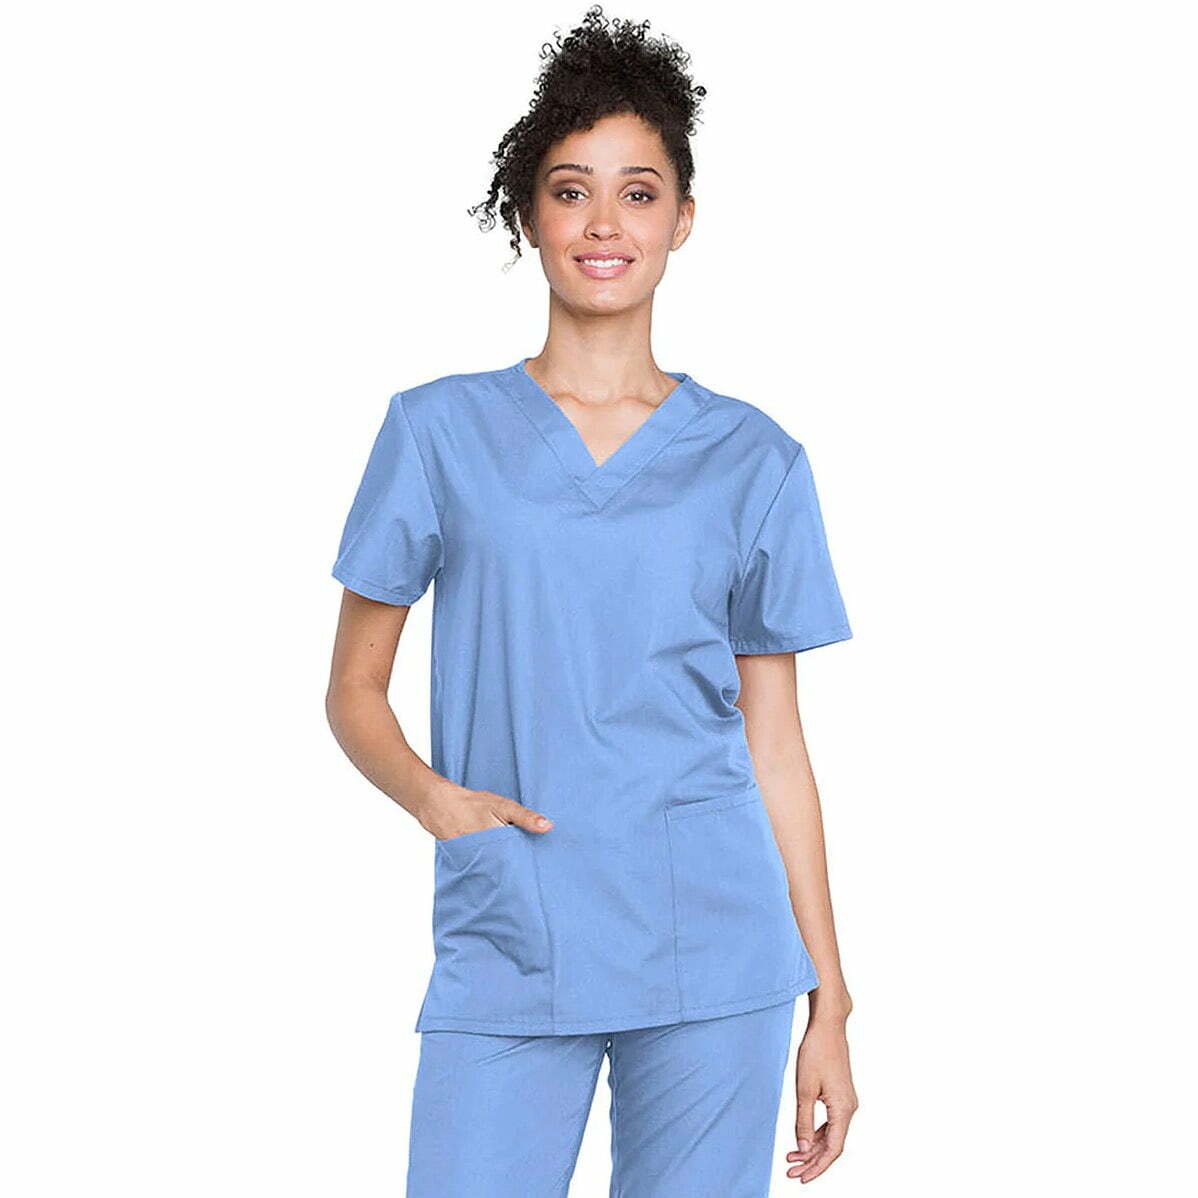 Pijama sanitario Original de color azul - comprar uniformes sanitarios la tienda MedicalRopa